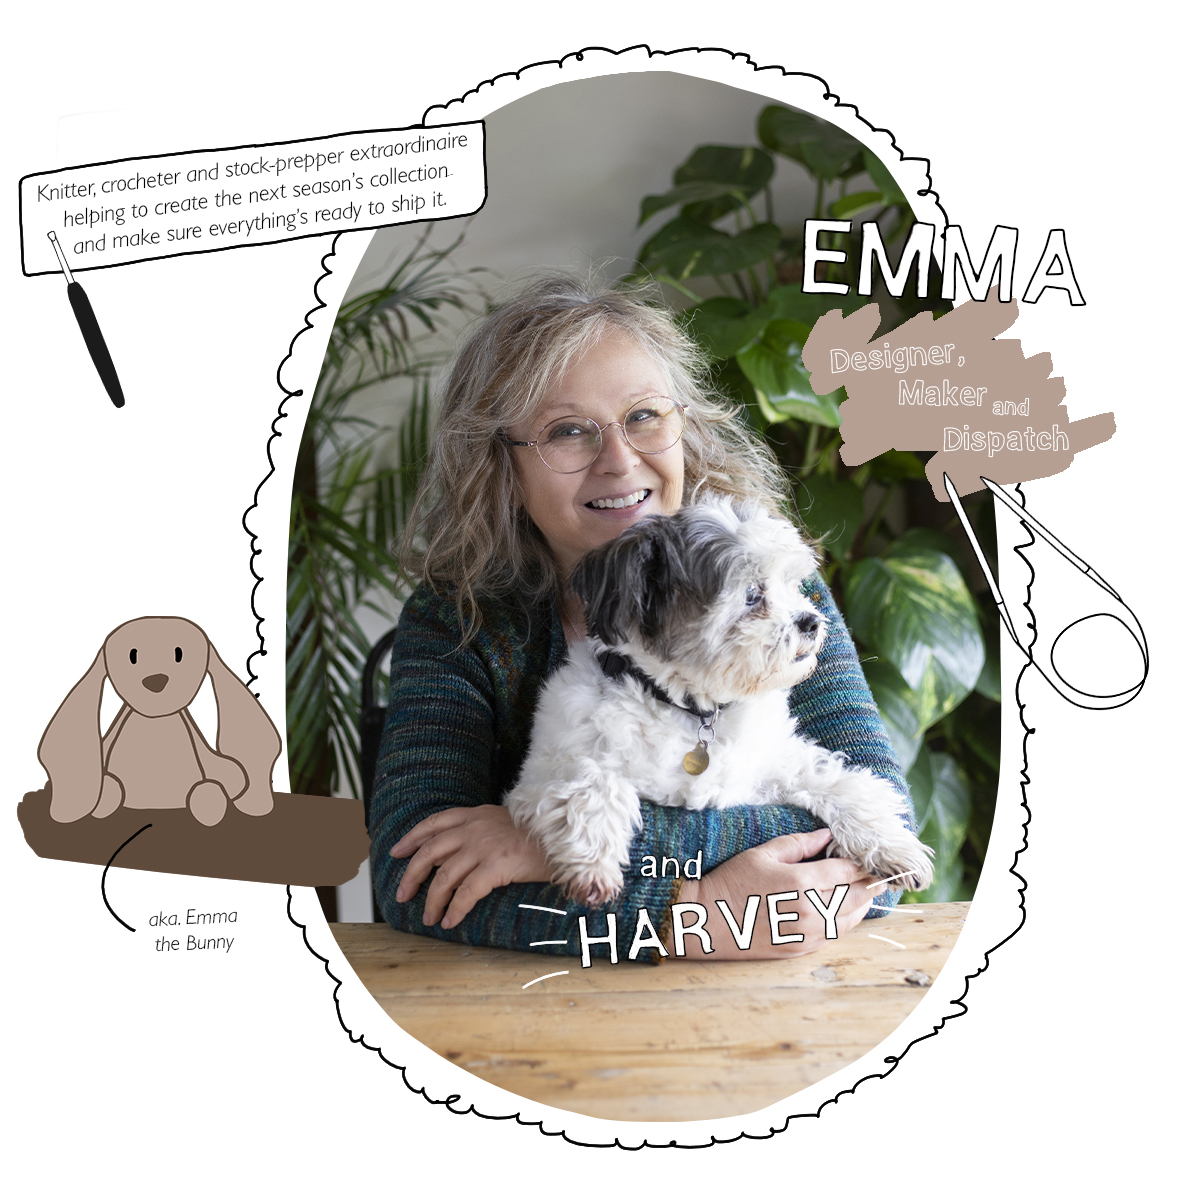 Emma: Designer, Maker and Dispatch